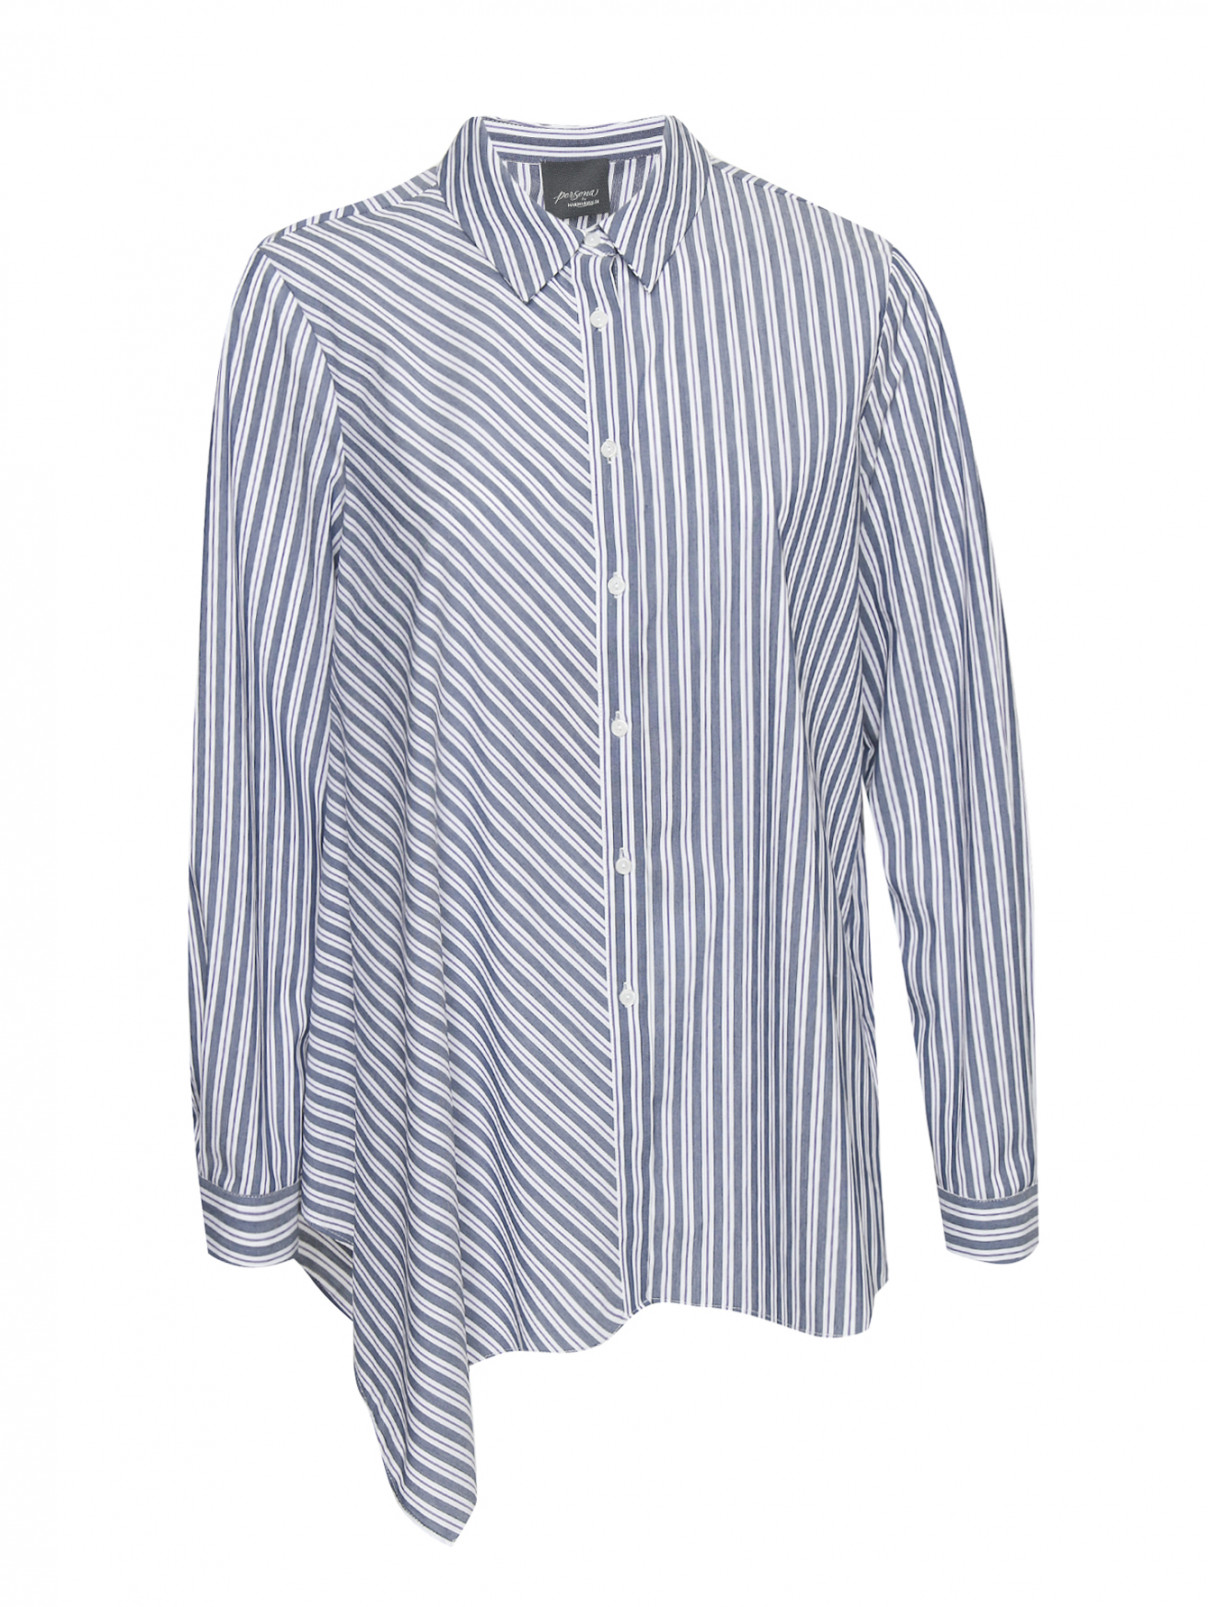 Рубашка из хлопка свободного кроя с узором "полоска" Persona by Marina Rinaldi  –  Общий вид  – Цвет:  Узор